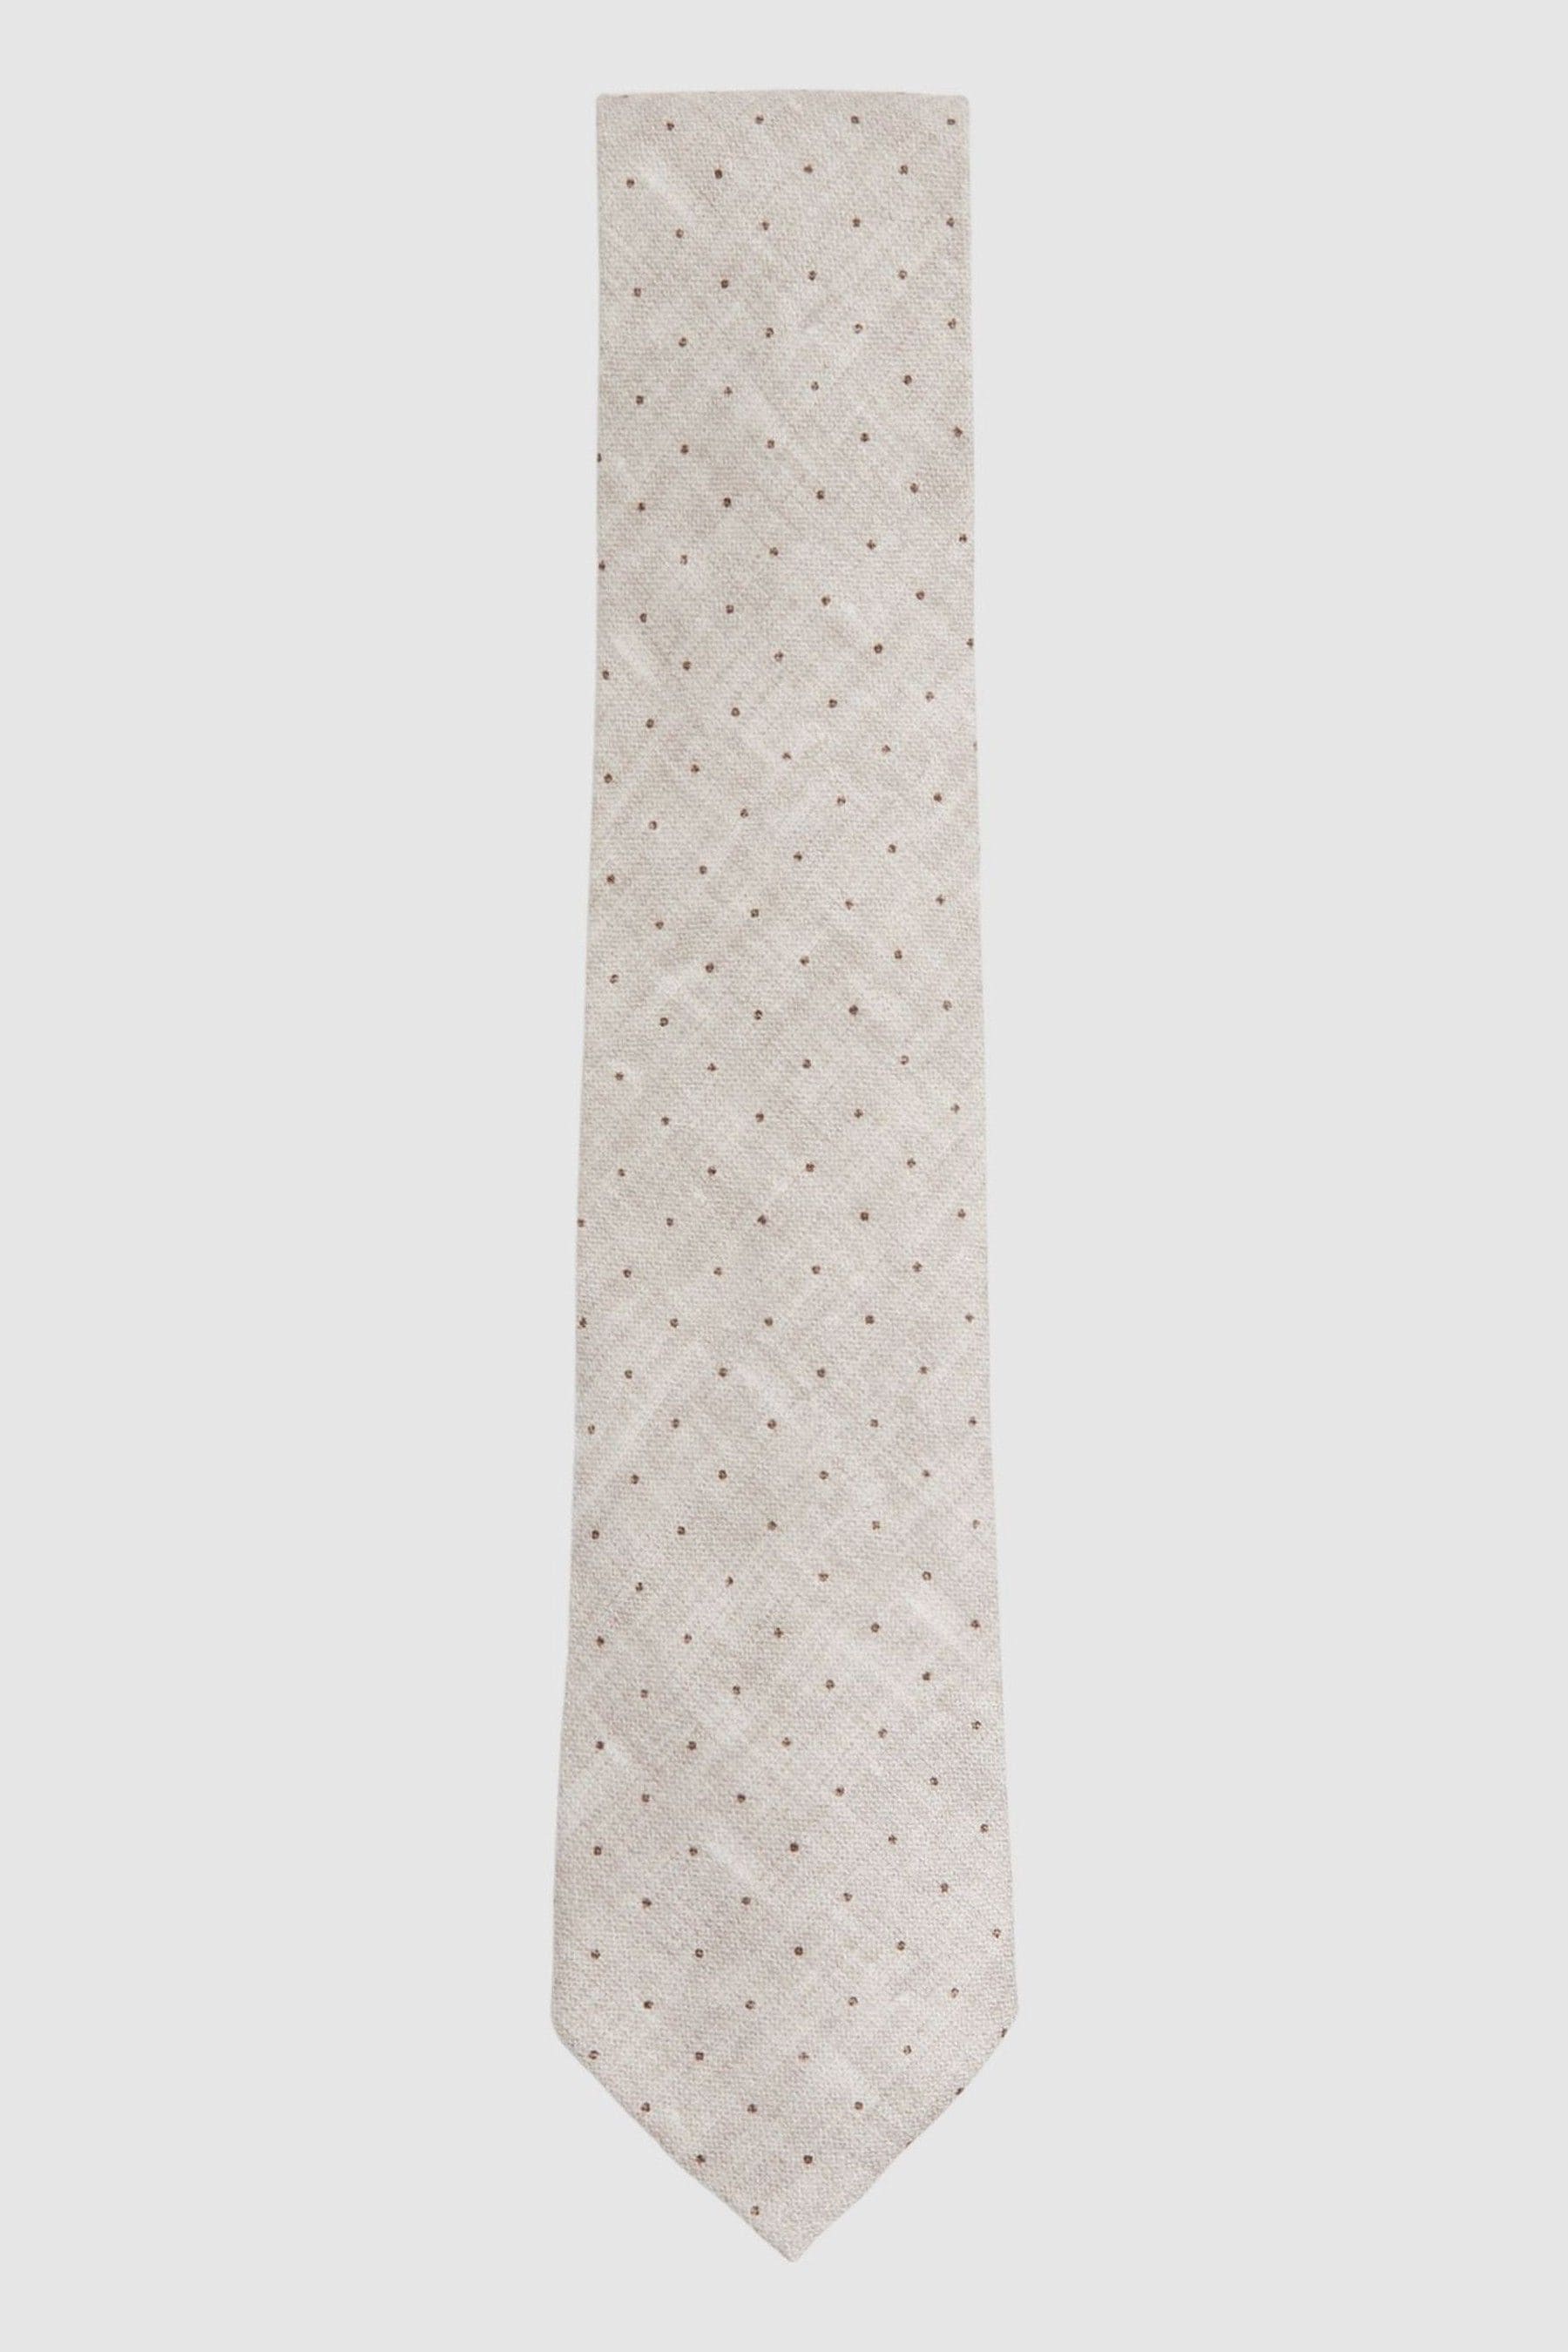 Reiss Lateran - Oatmeal Melange Silk Polka Dot Tie, One